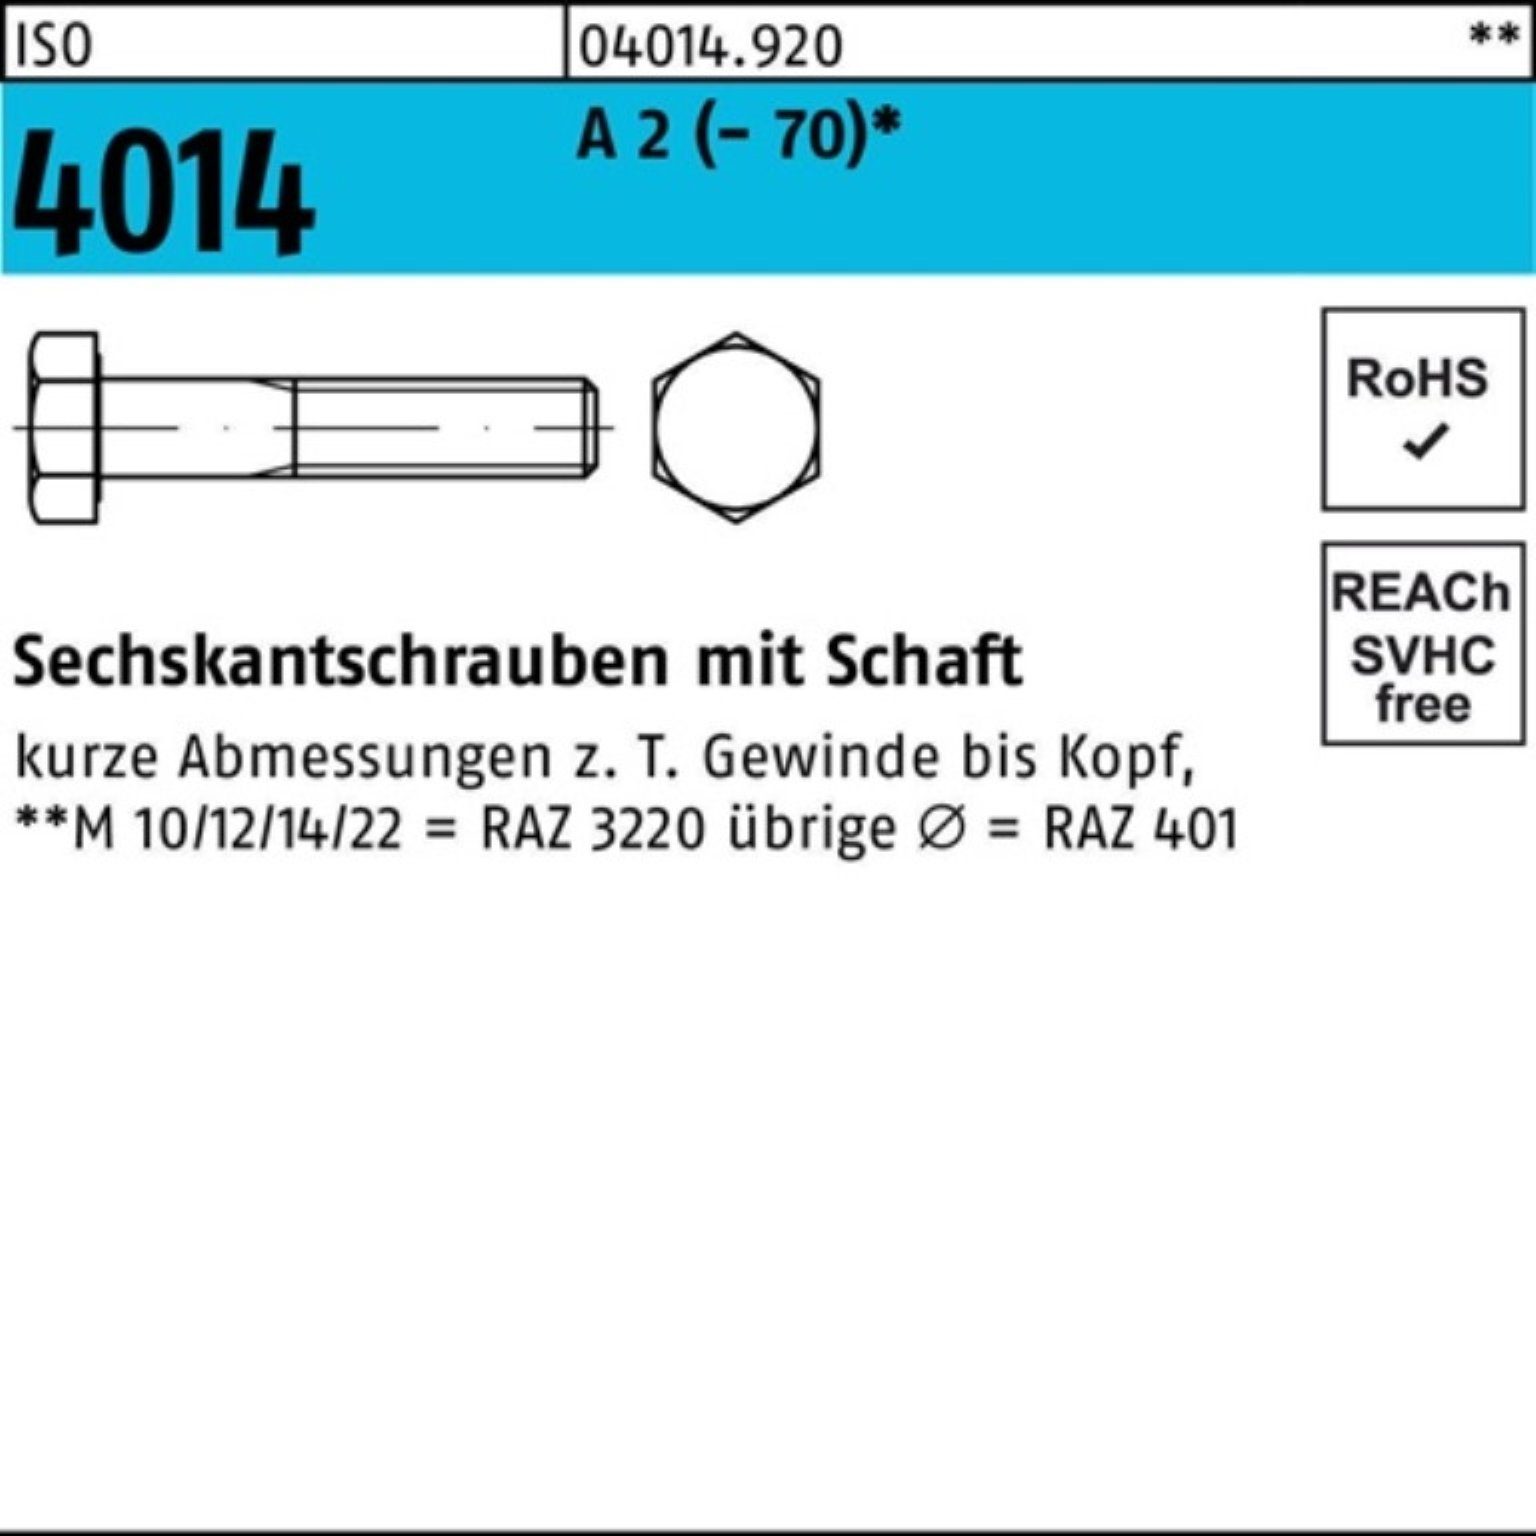 Bufab Sechskantschraube 100er Pack Sechskantschraube ISO 4014 Schaft M22x 100 A 2 (70) 10 St